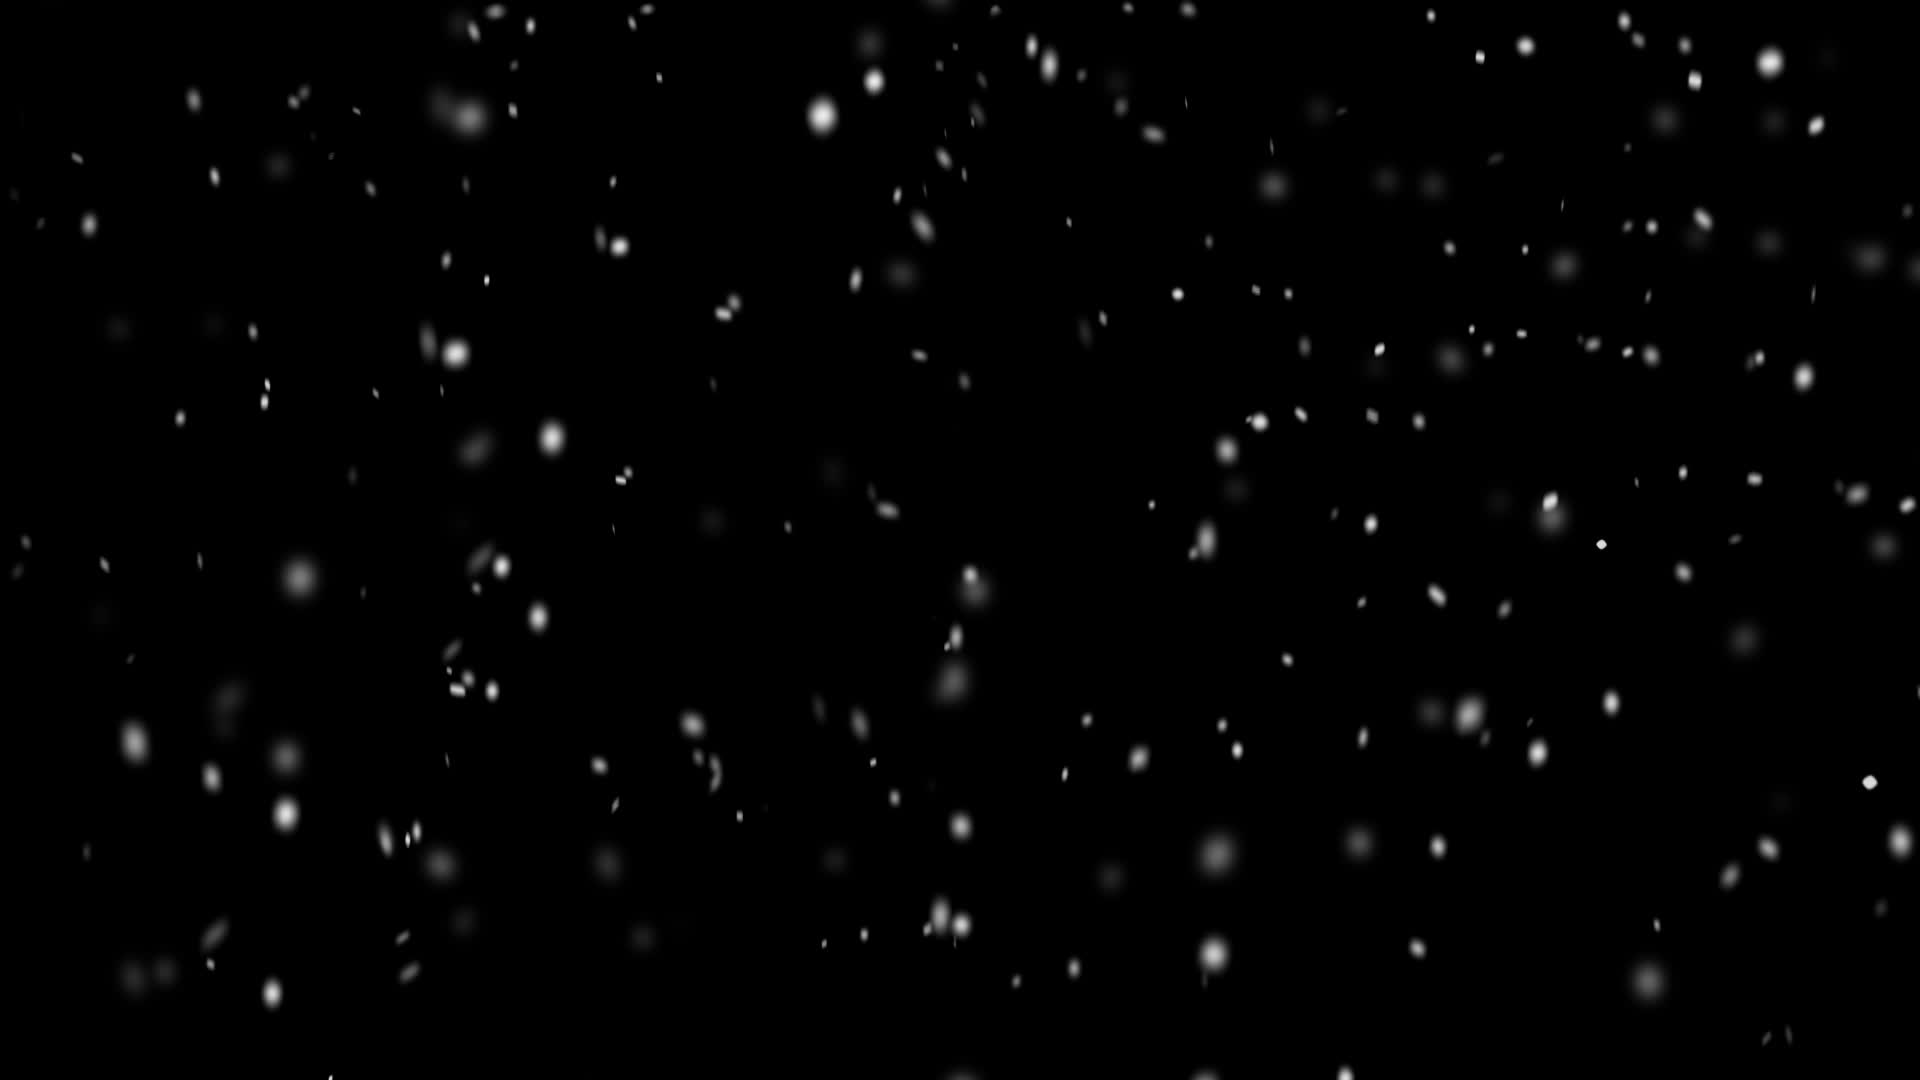 Tuyết đang rơi trên nền đen cực kì huyền ảo, tạo nên một cảnh tượng đẹp lung linh. Hãy cùng chiêm ngưỡng hình ảnh này và đắm mình trong không gian tuyết trắng, cùng sự trầm lắng của màu đen.